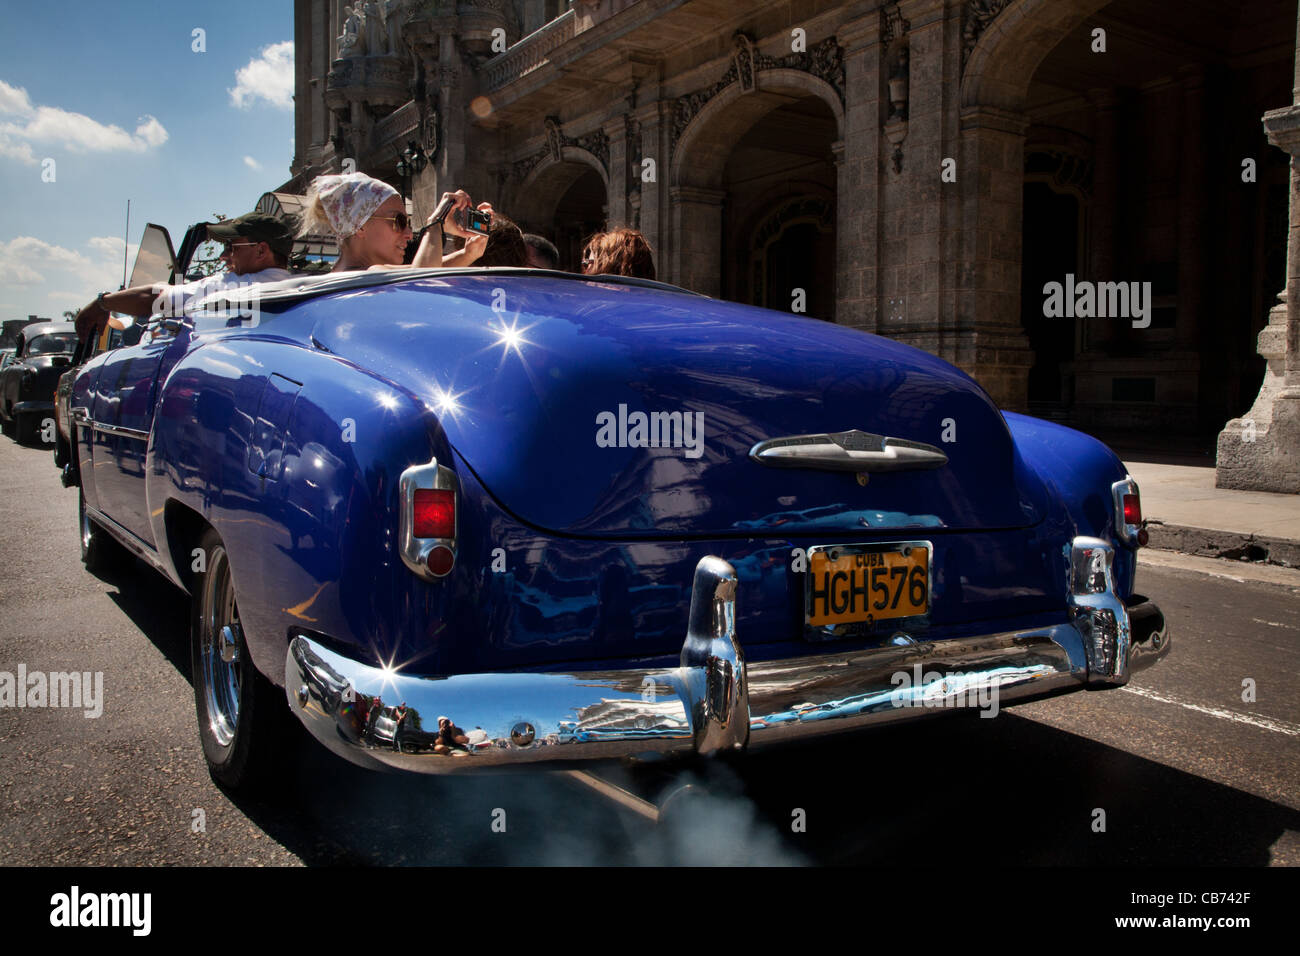 Les touristes dans une voiture d'époque, La Havane (La Habana, Cuba) Banque D'Images